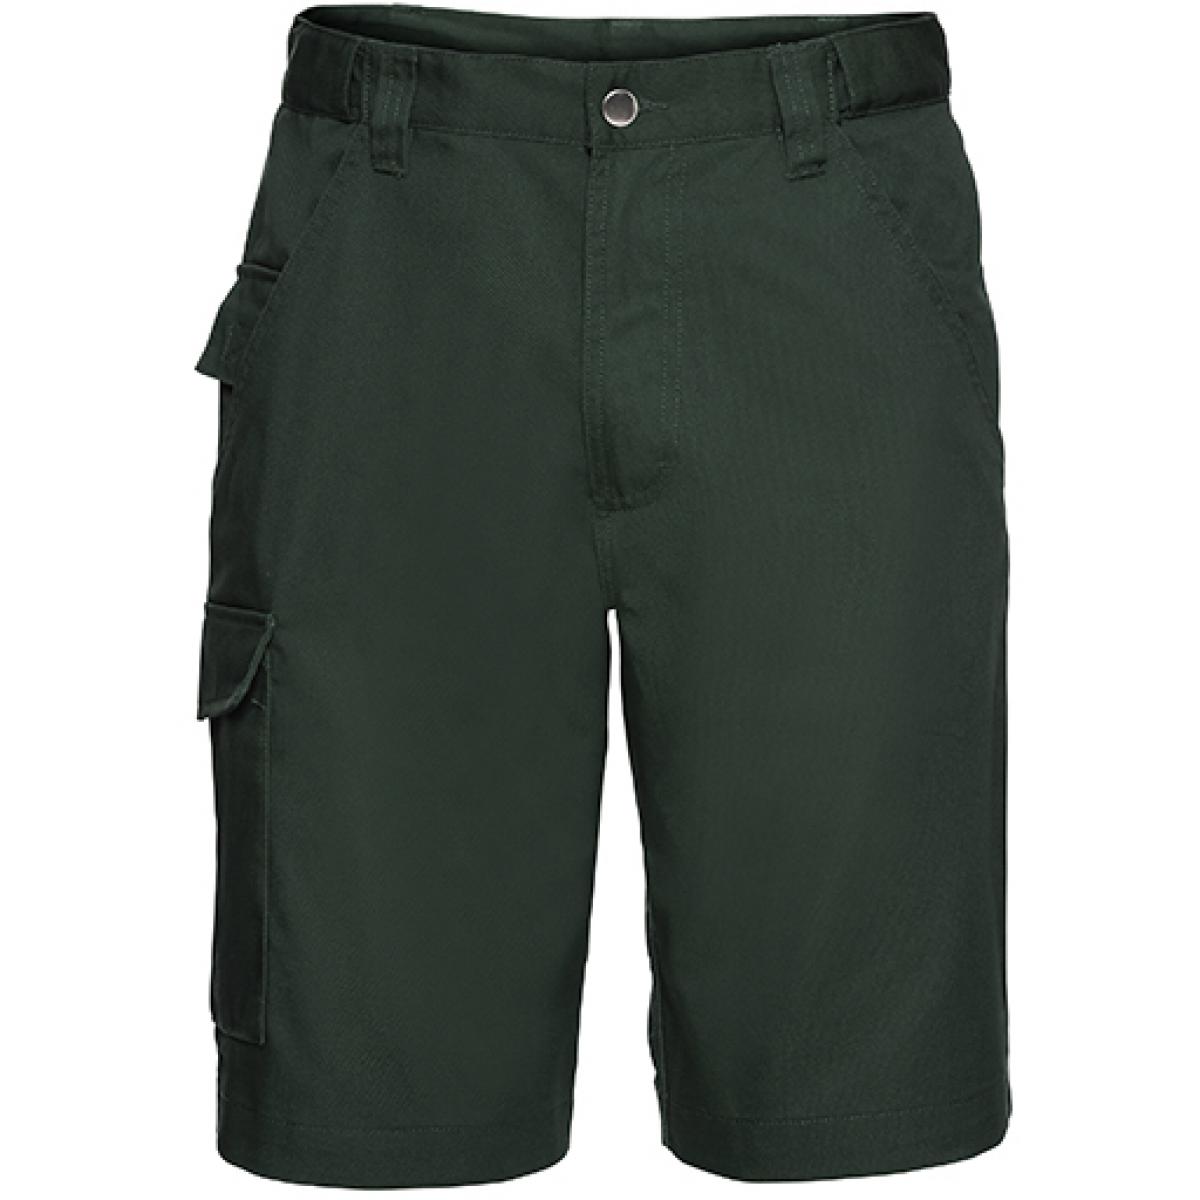 Hersteller: Russell Herstellernummer: R-002M-0 Artikelbezeichnung: Workwear-Shorts aus Polyester-/Baumwoll-Twill Farbe: Bottle Green